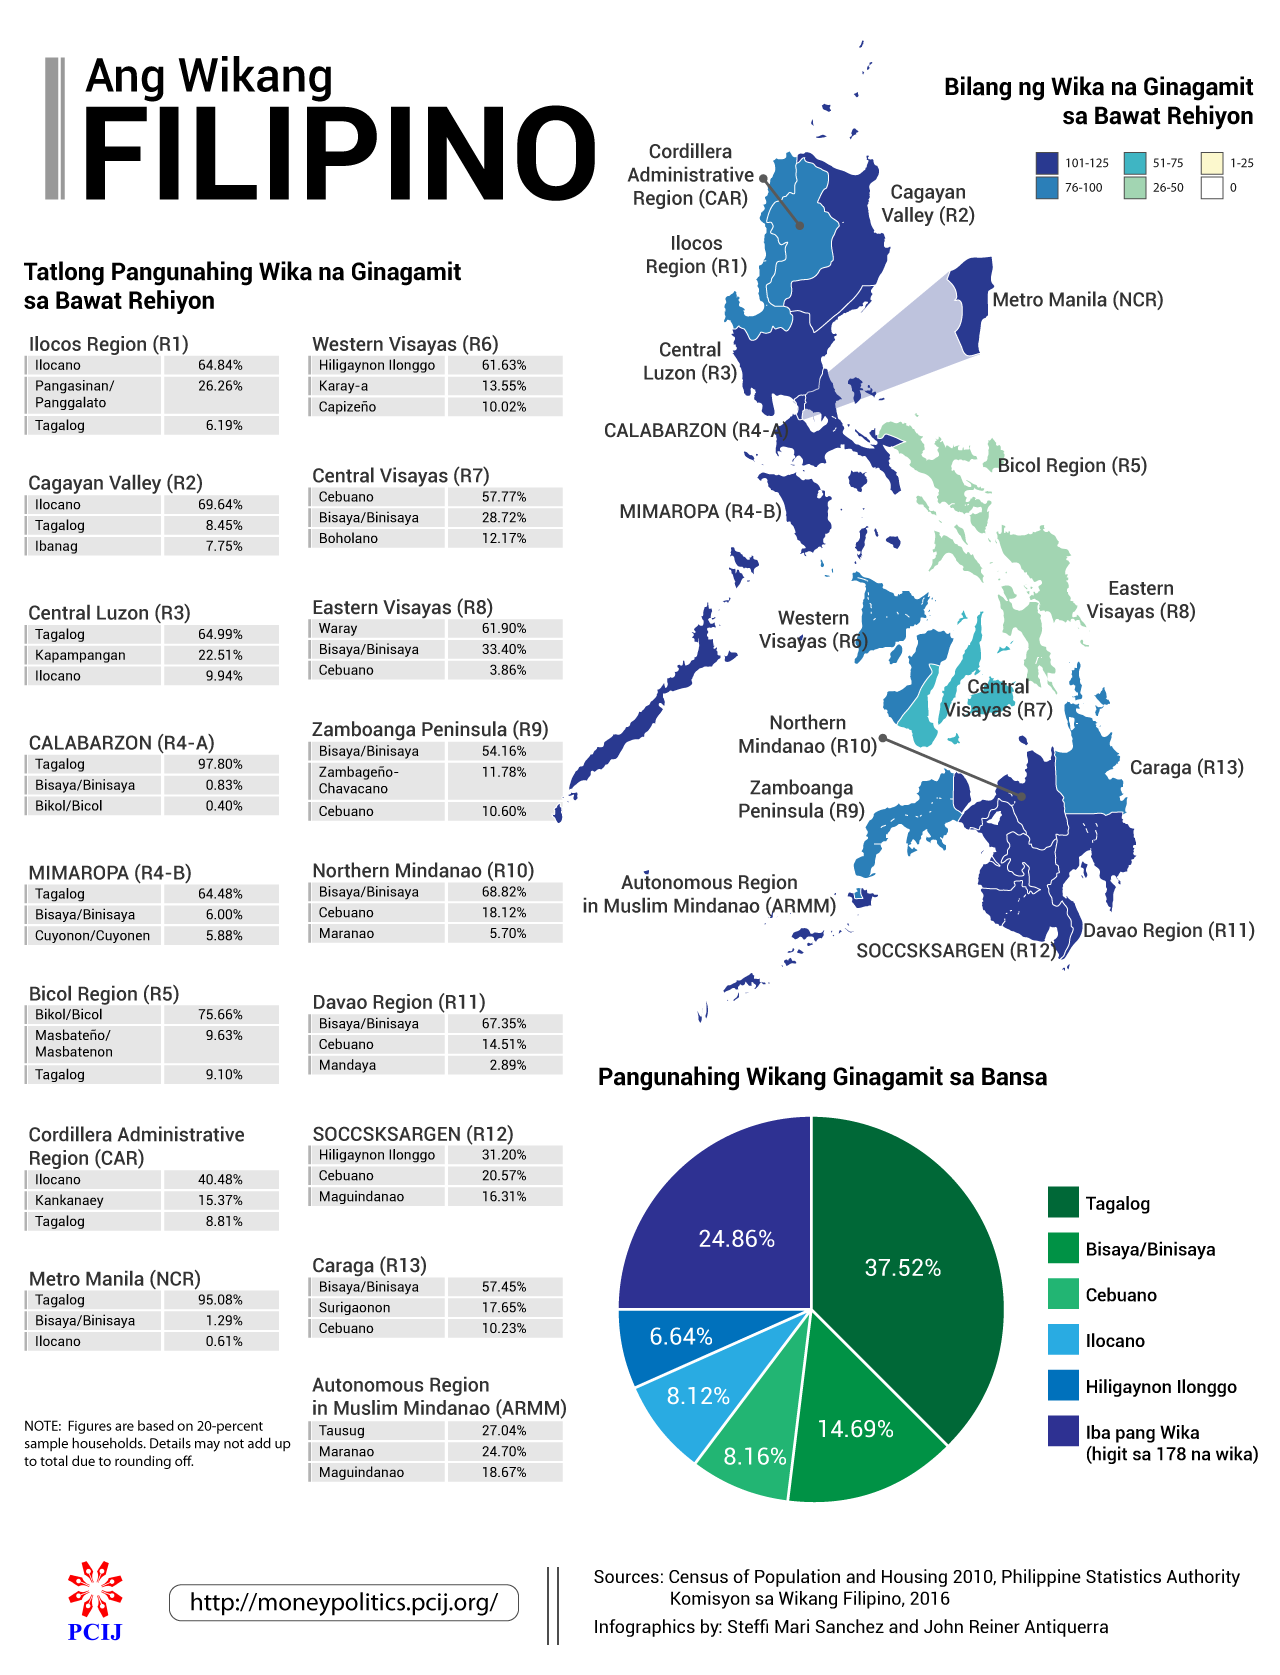 Ang Mga Wika ng Pilipinas | Philippine Center for Investigative Journalism